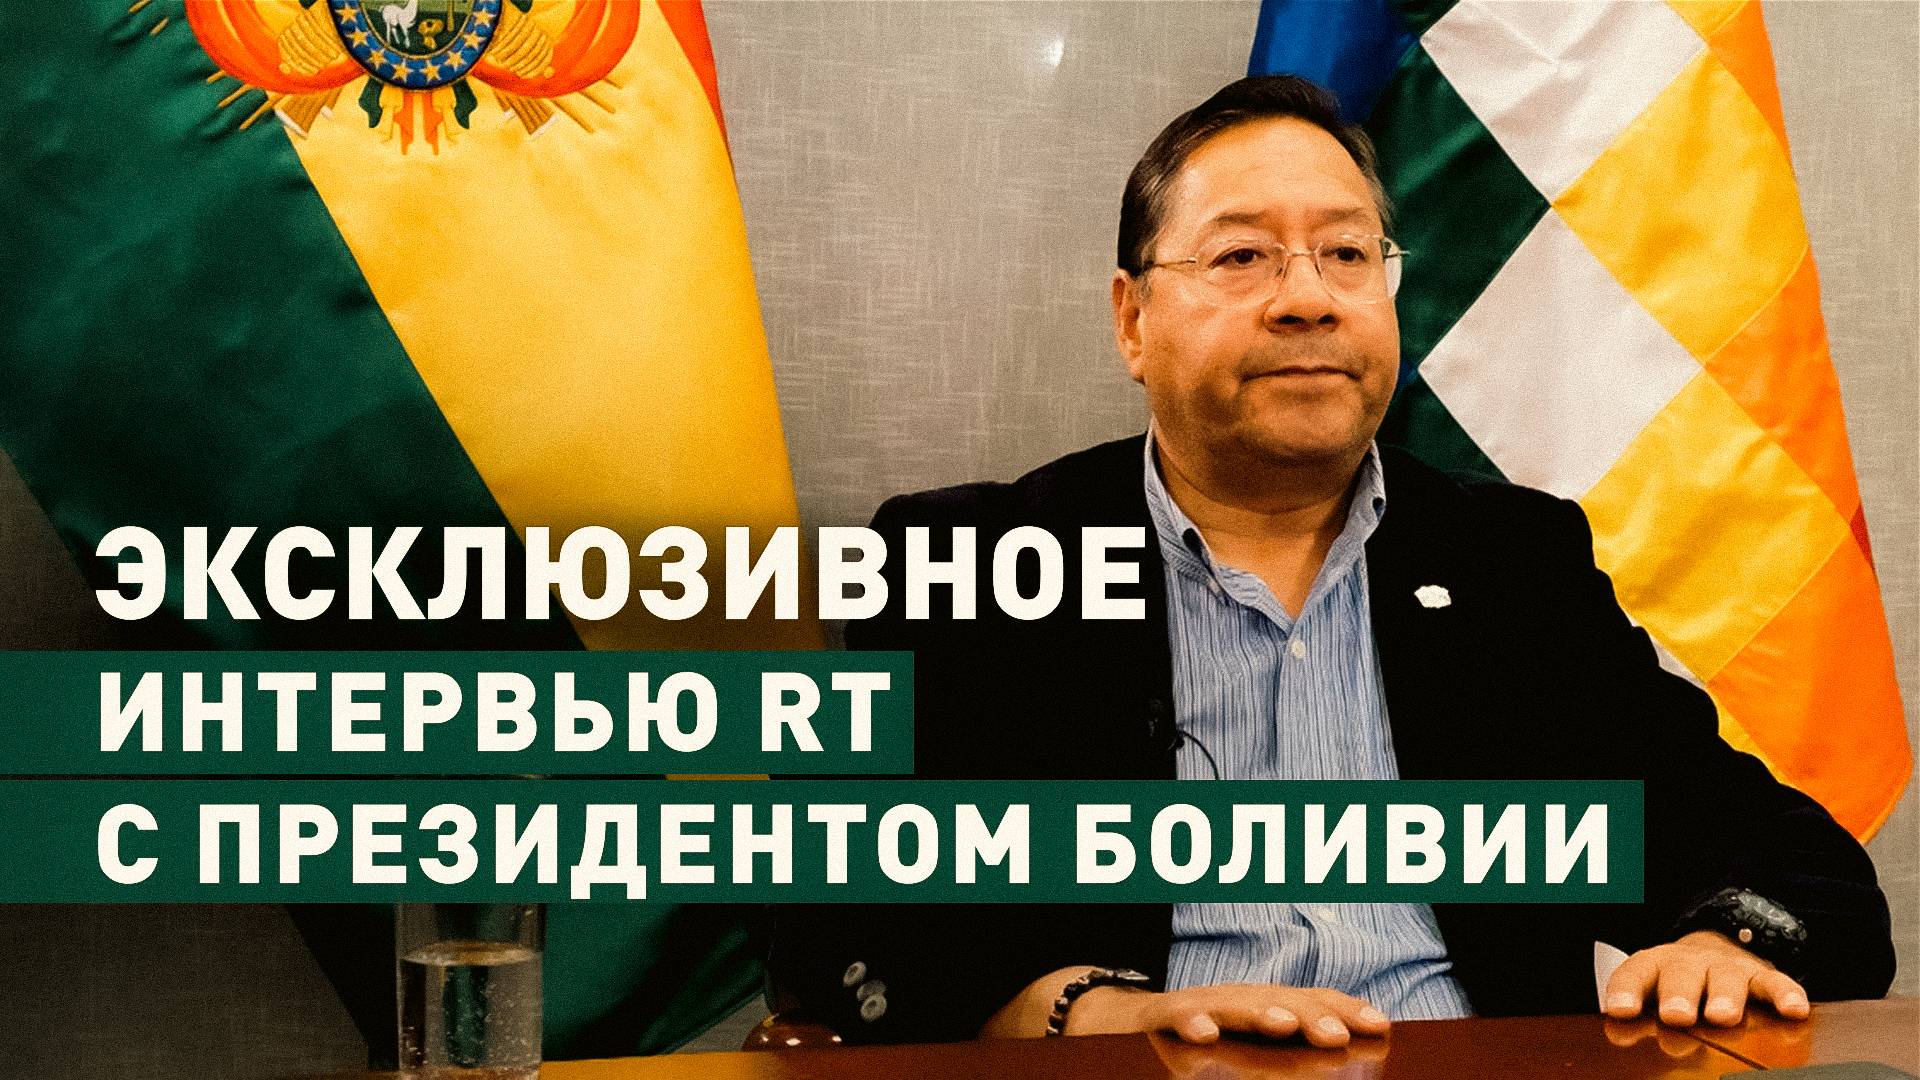 «Причастны отставные военные»: президент Боливии о попытке госпереворота в эксклюзивном интервью RT